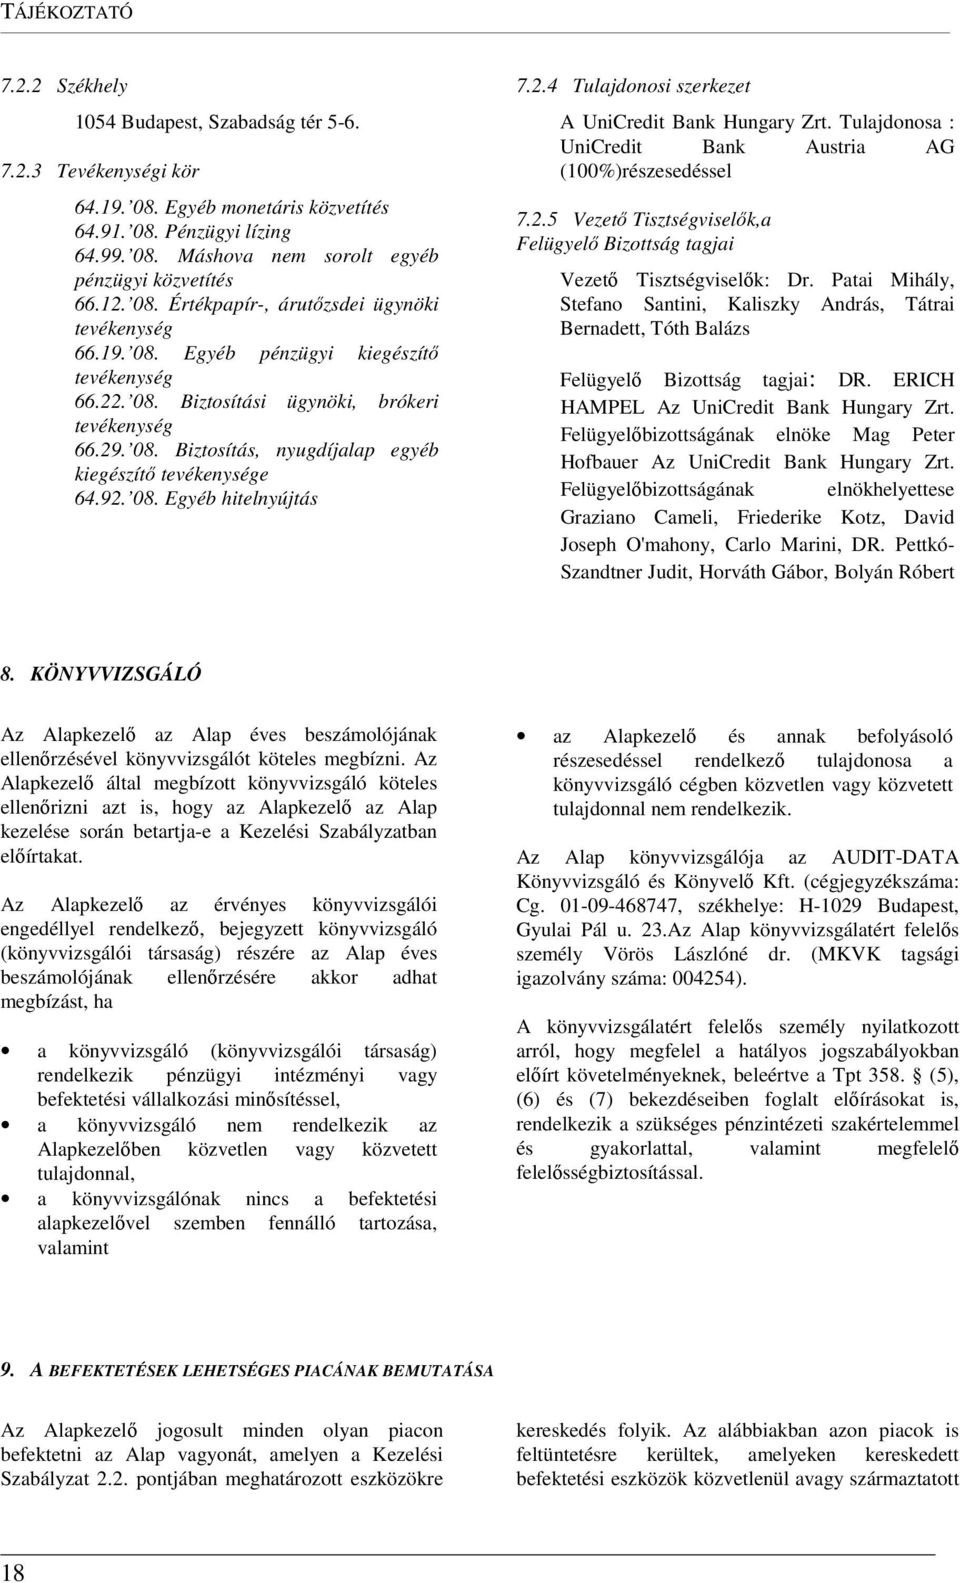 92. 08. Egyéb hitelnyújtás 7.2.4 Tulajdonosi szerkezet A UniCredit Bank Hungary Zrt. Tulajdonosa : UniCredit Bank Austria AG (100%)részesedéssel 7.2.5 Vezető Tisztségviselők,a Felügyelő Bizottság tagjai Vezető Tisztségviselők: Dr.